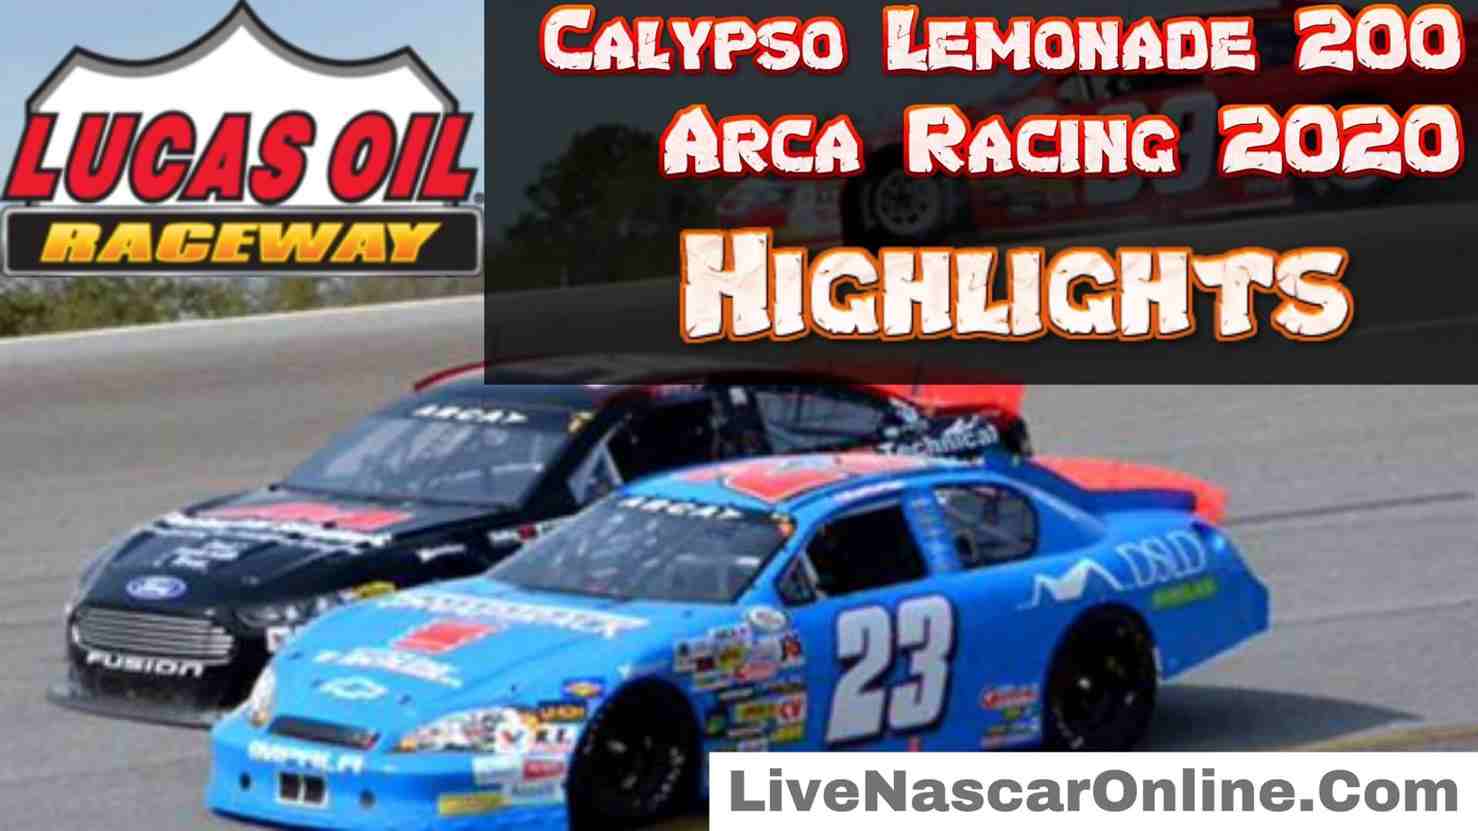 Calypso Lemonade 200 Arca 2020 Highlights